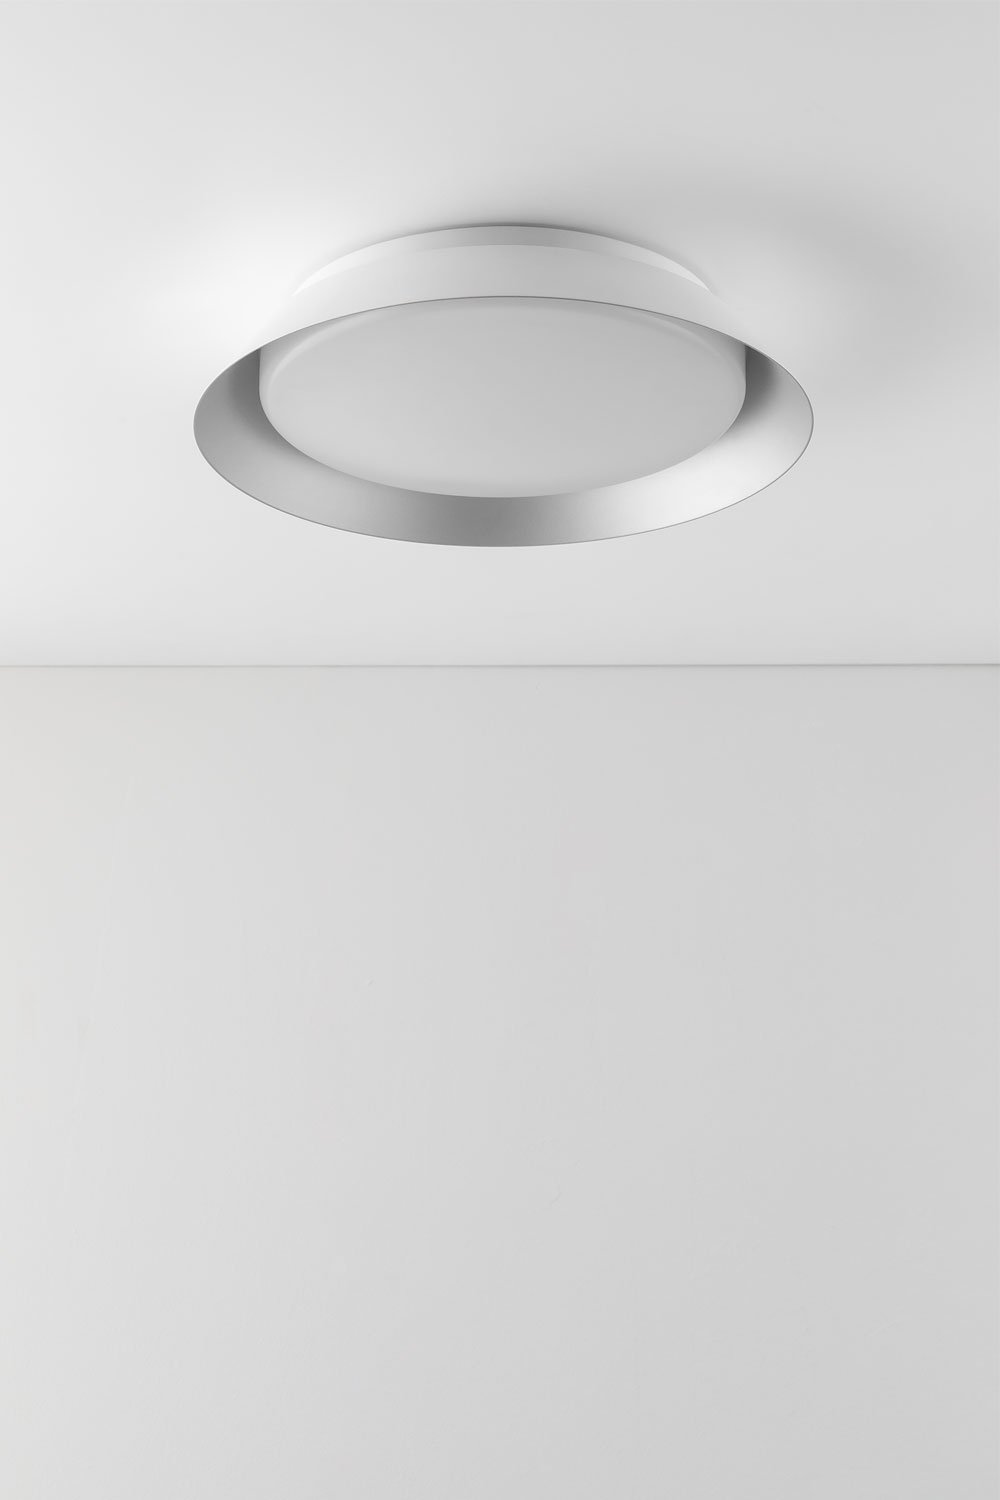 LED-plafondlamp in methacrylaat en metaal Dreville , galerij beeld 1